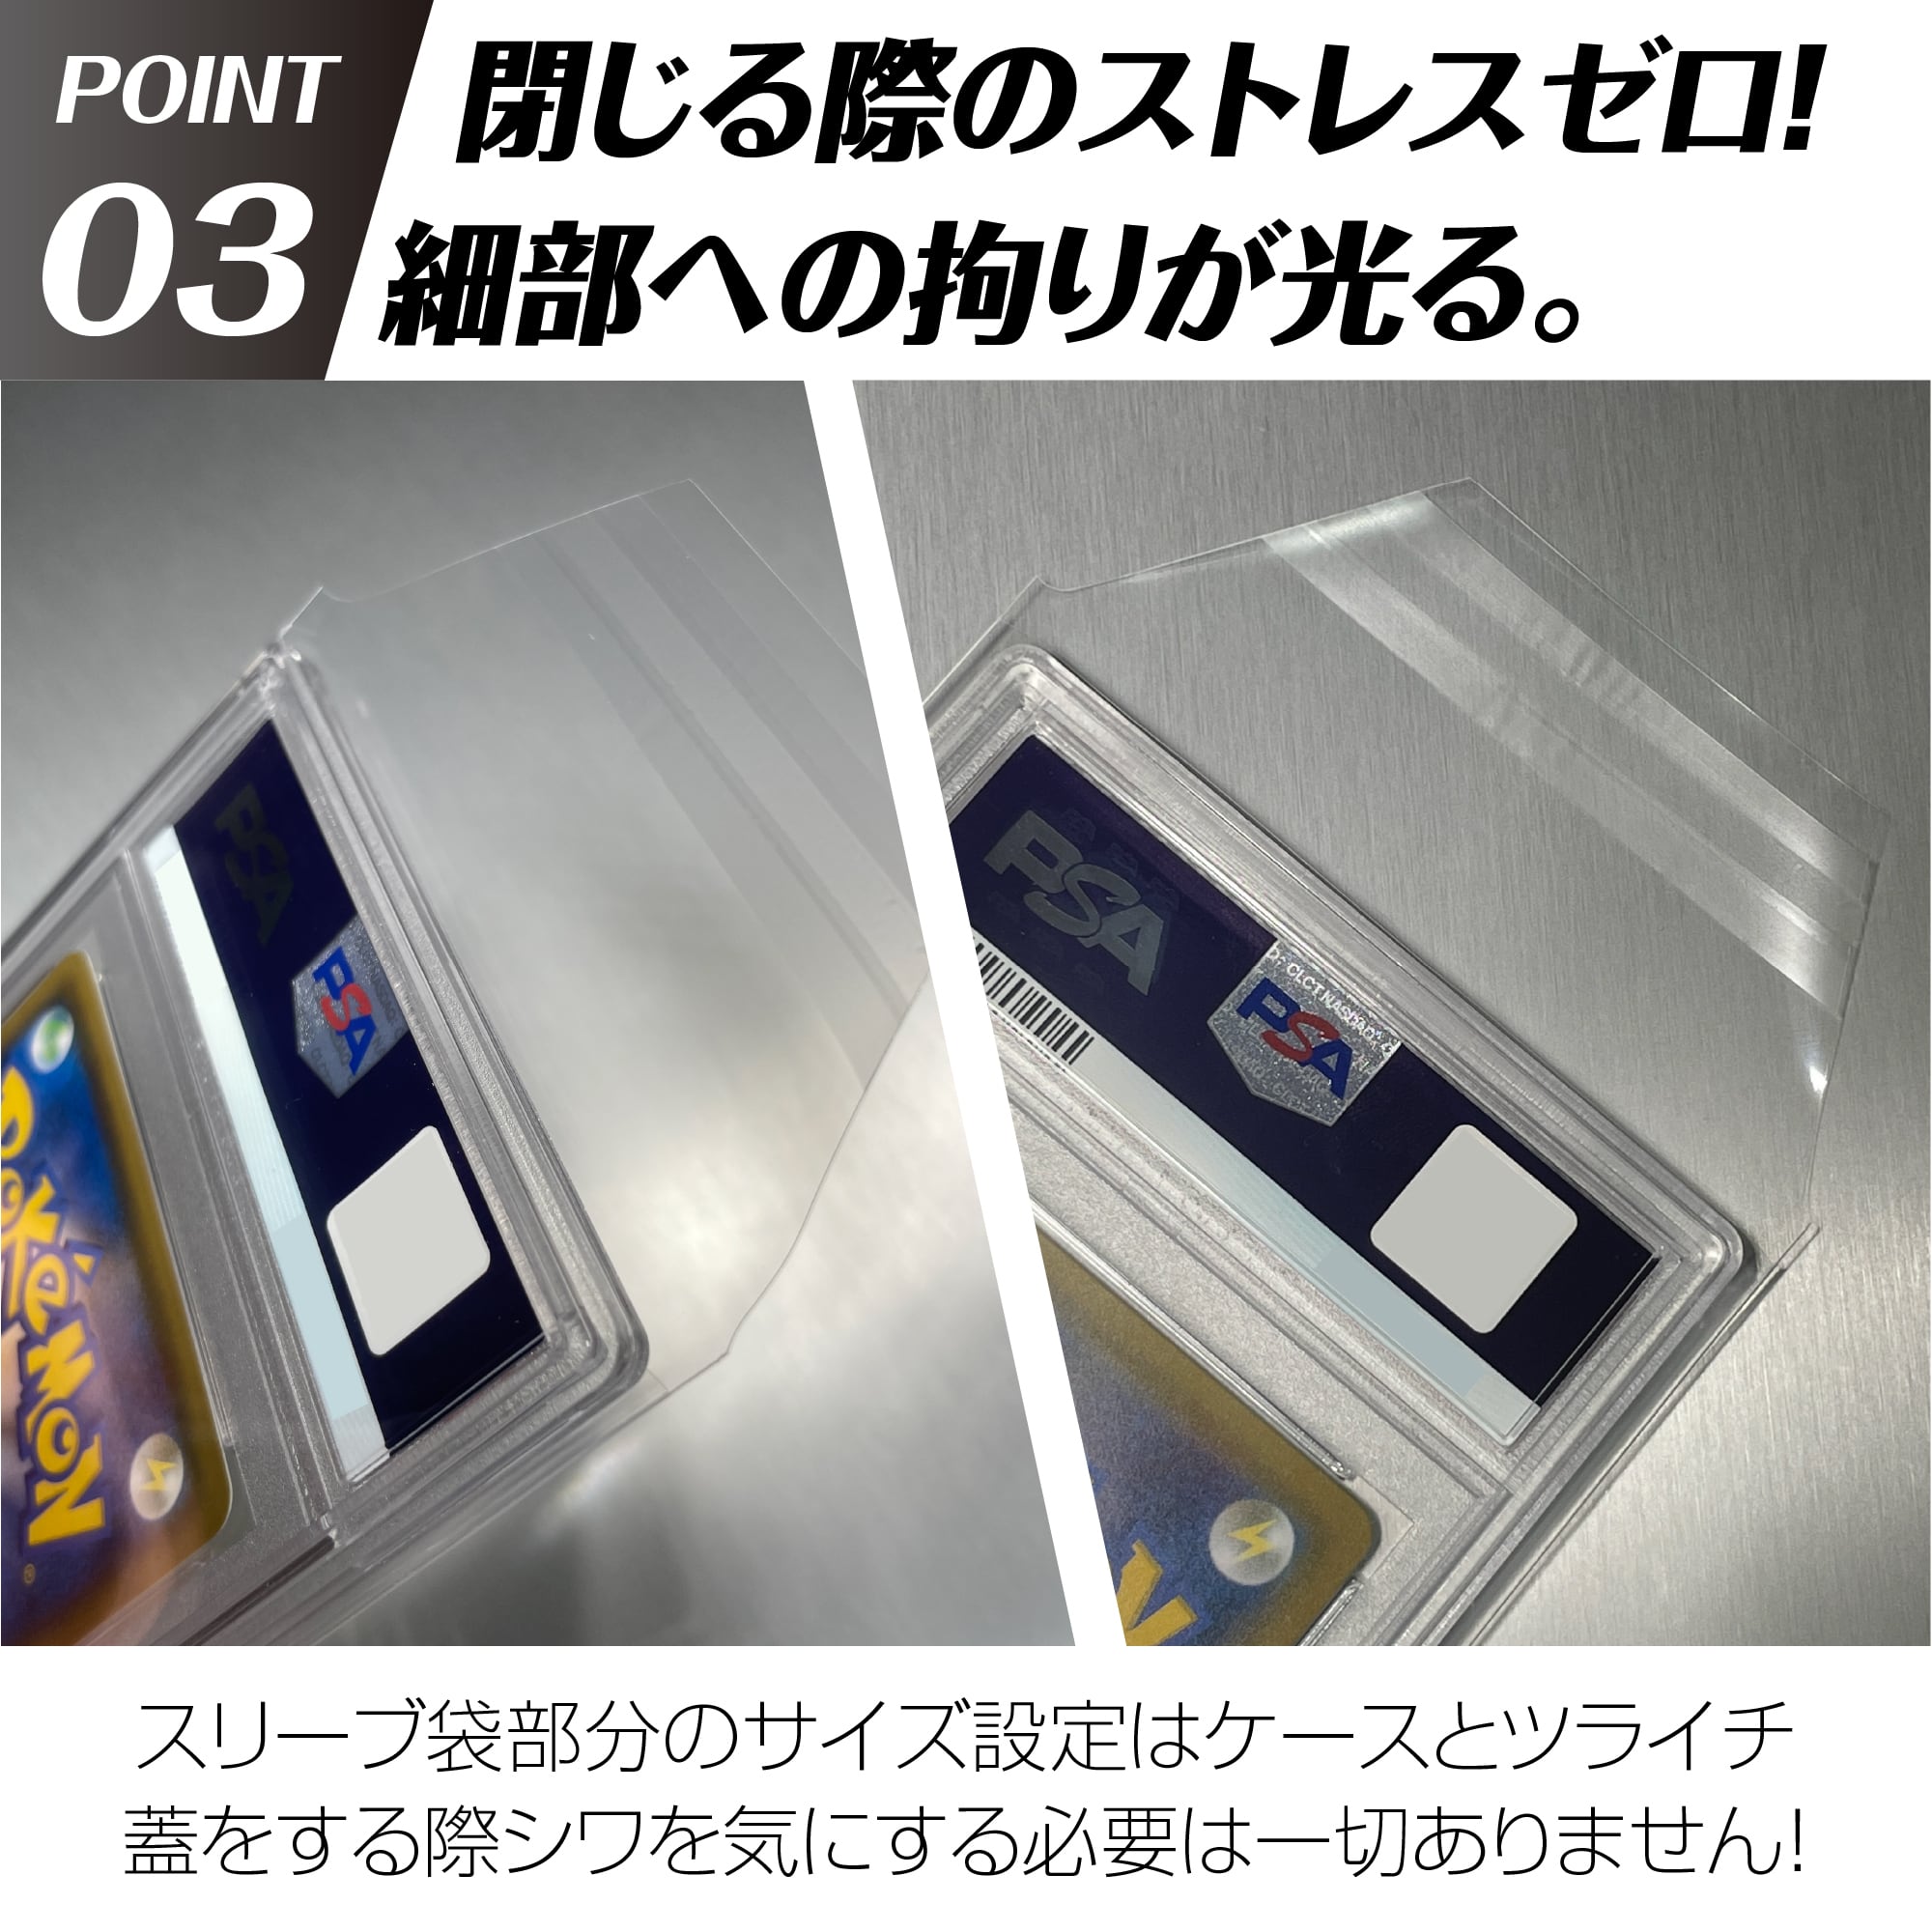 the card コーナーカットエディション psa専用 25枚